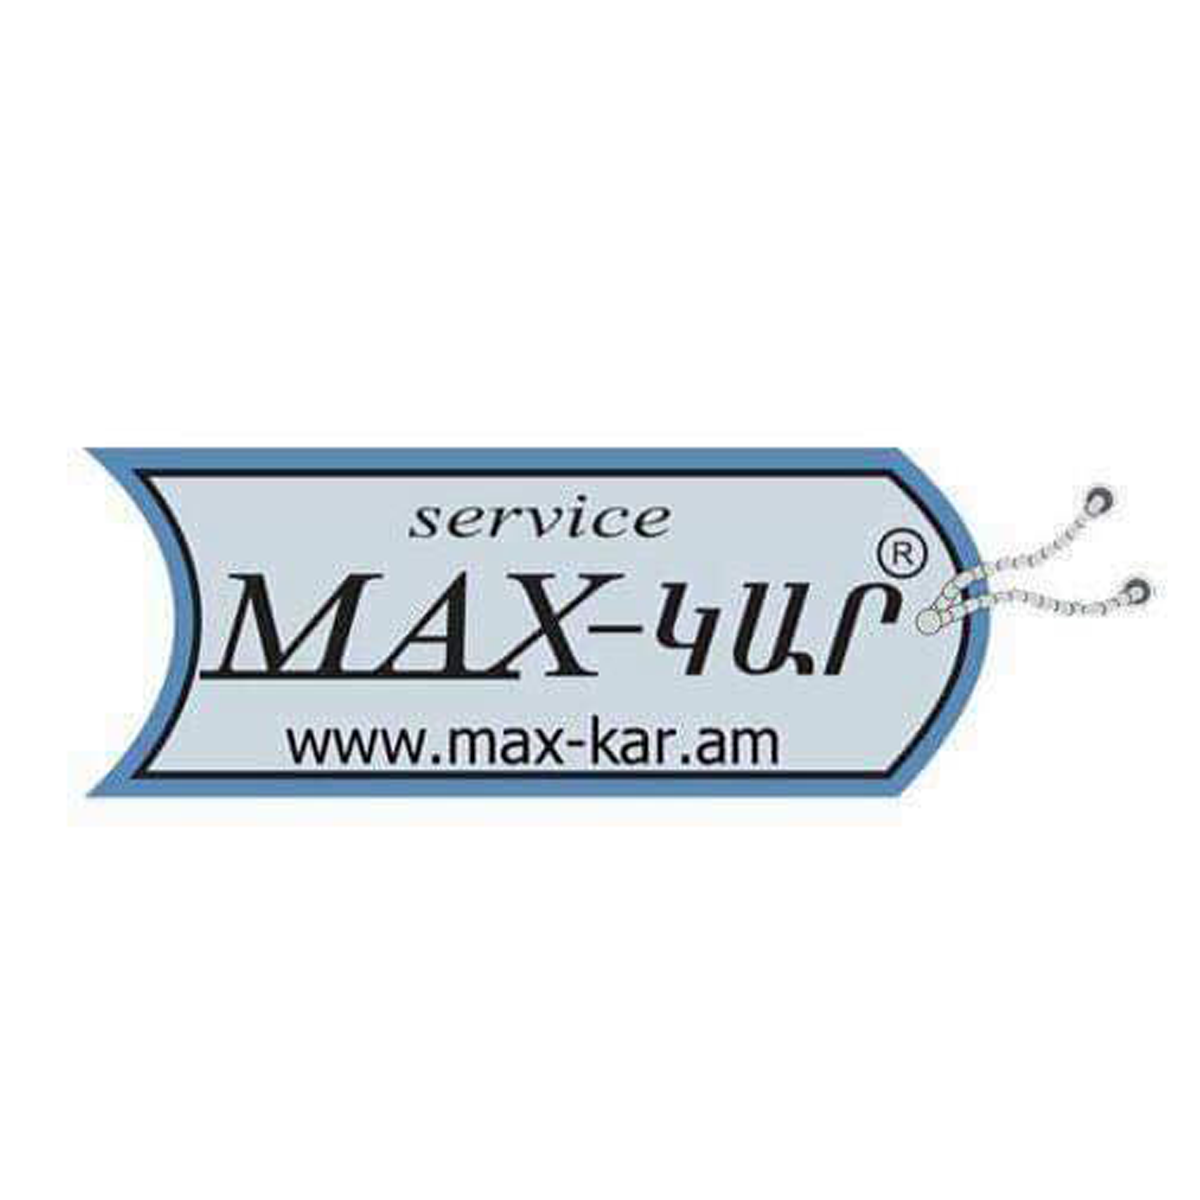 806-max-kar-1200x1200.png